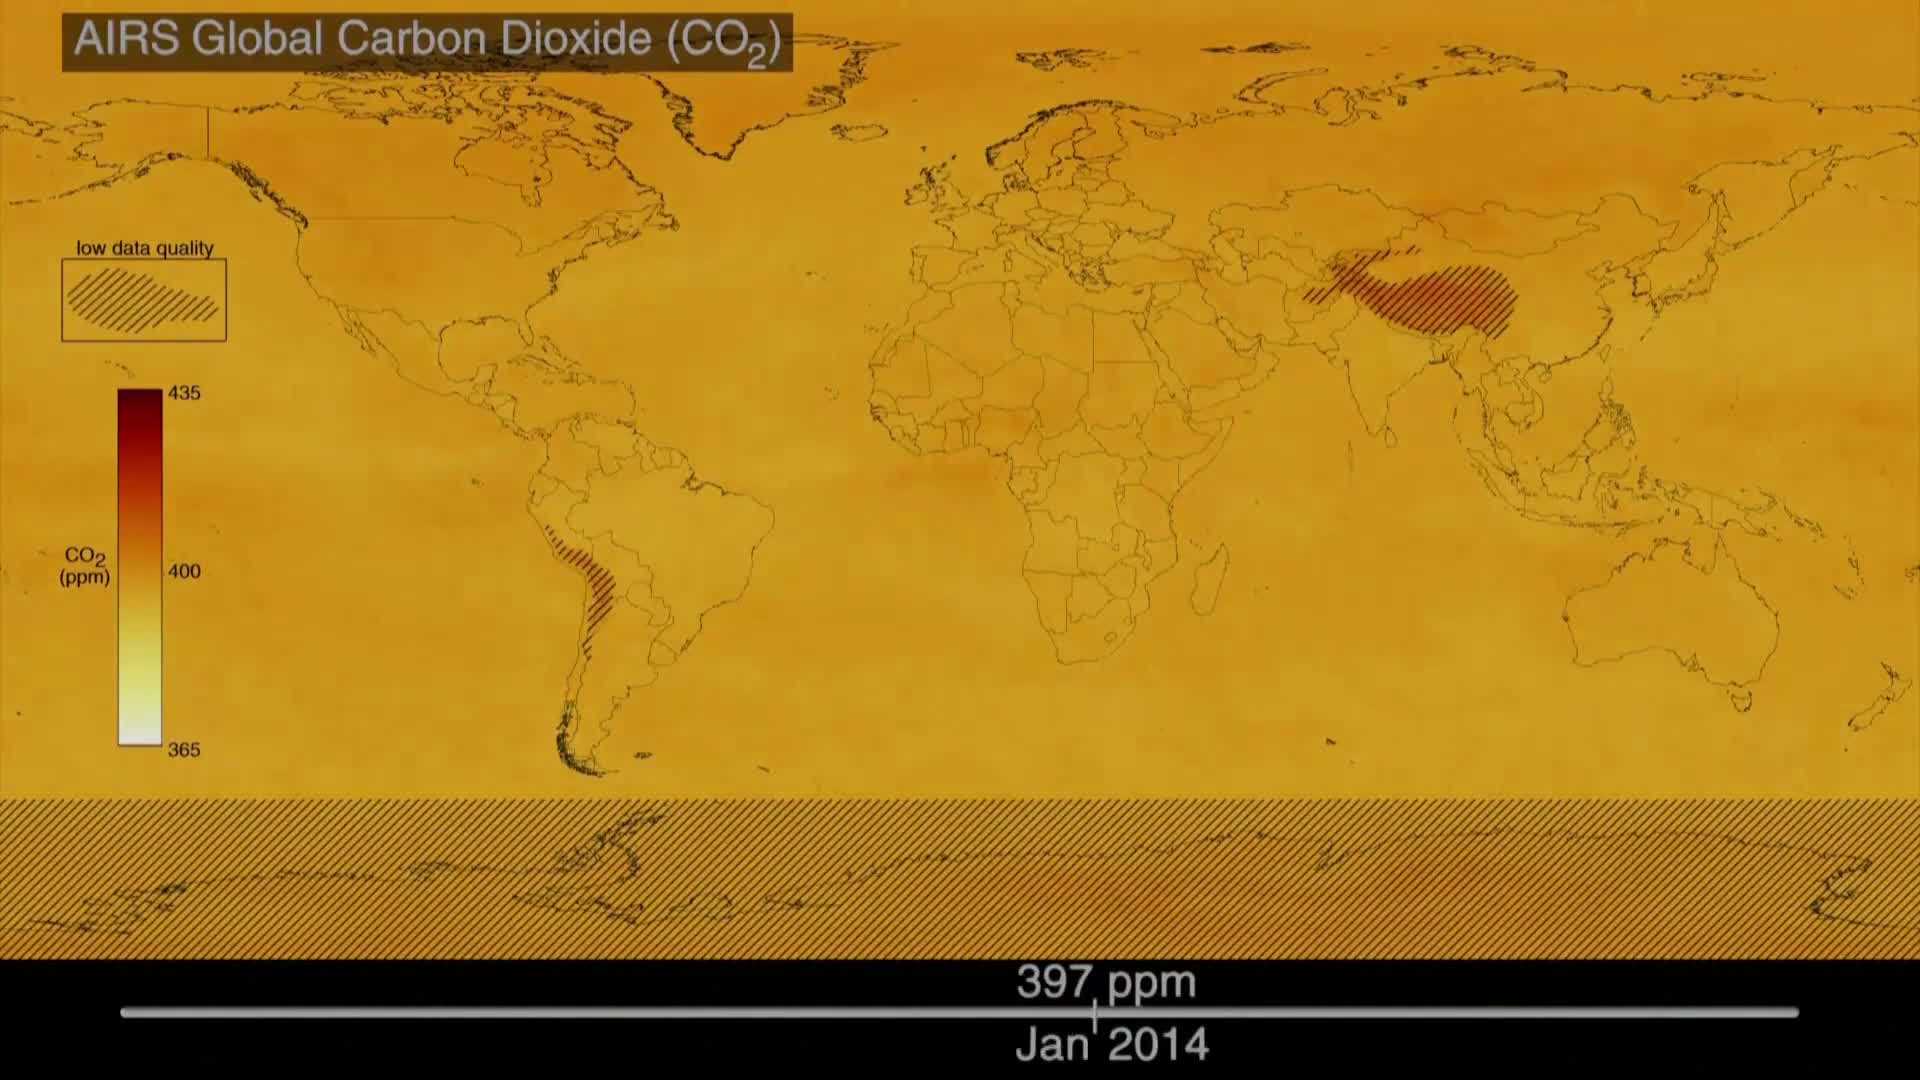 НАСА и доклад на ООН показаха климатичните промени на нашата планета от 1880г. насам (ВИДЕО)